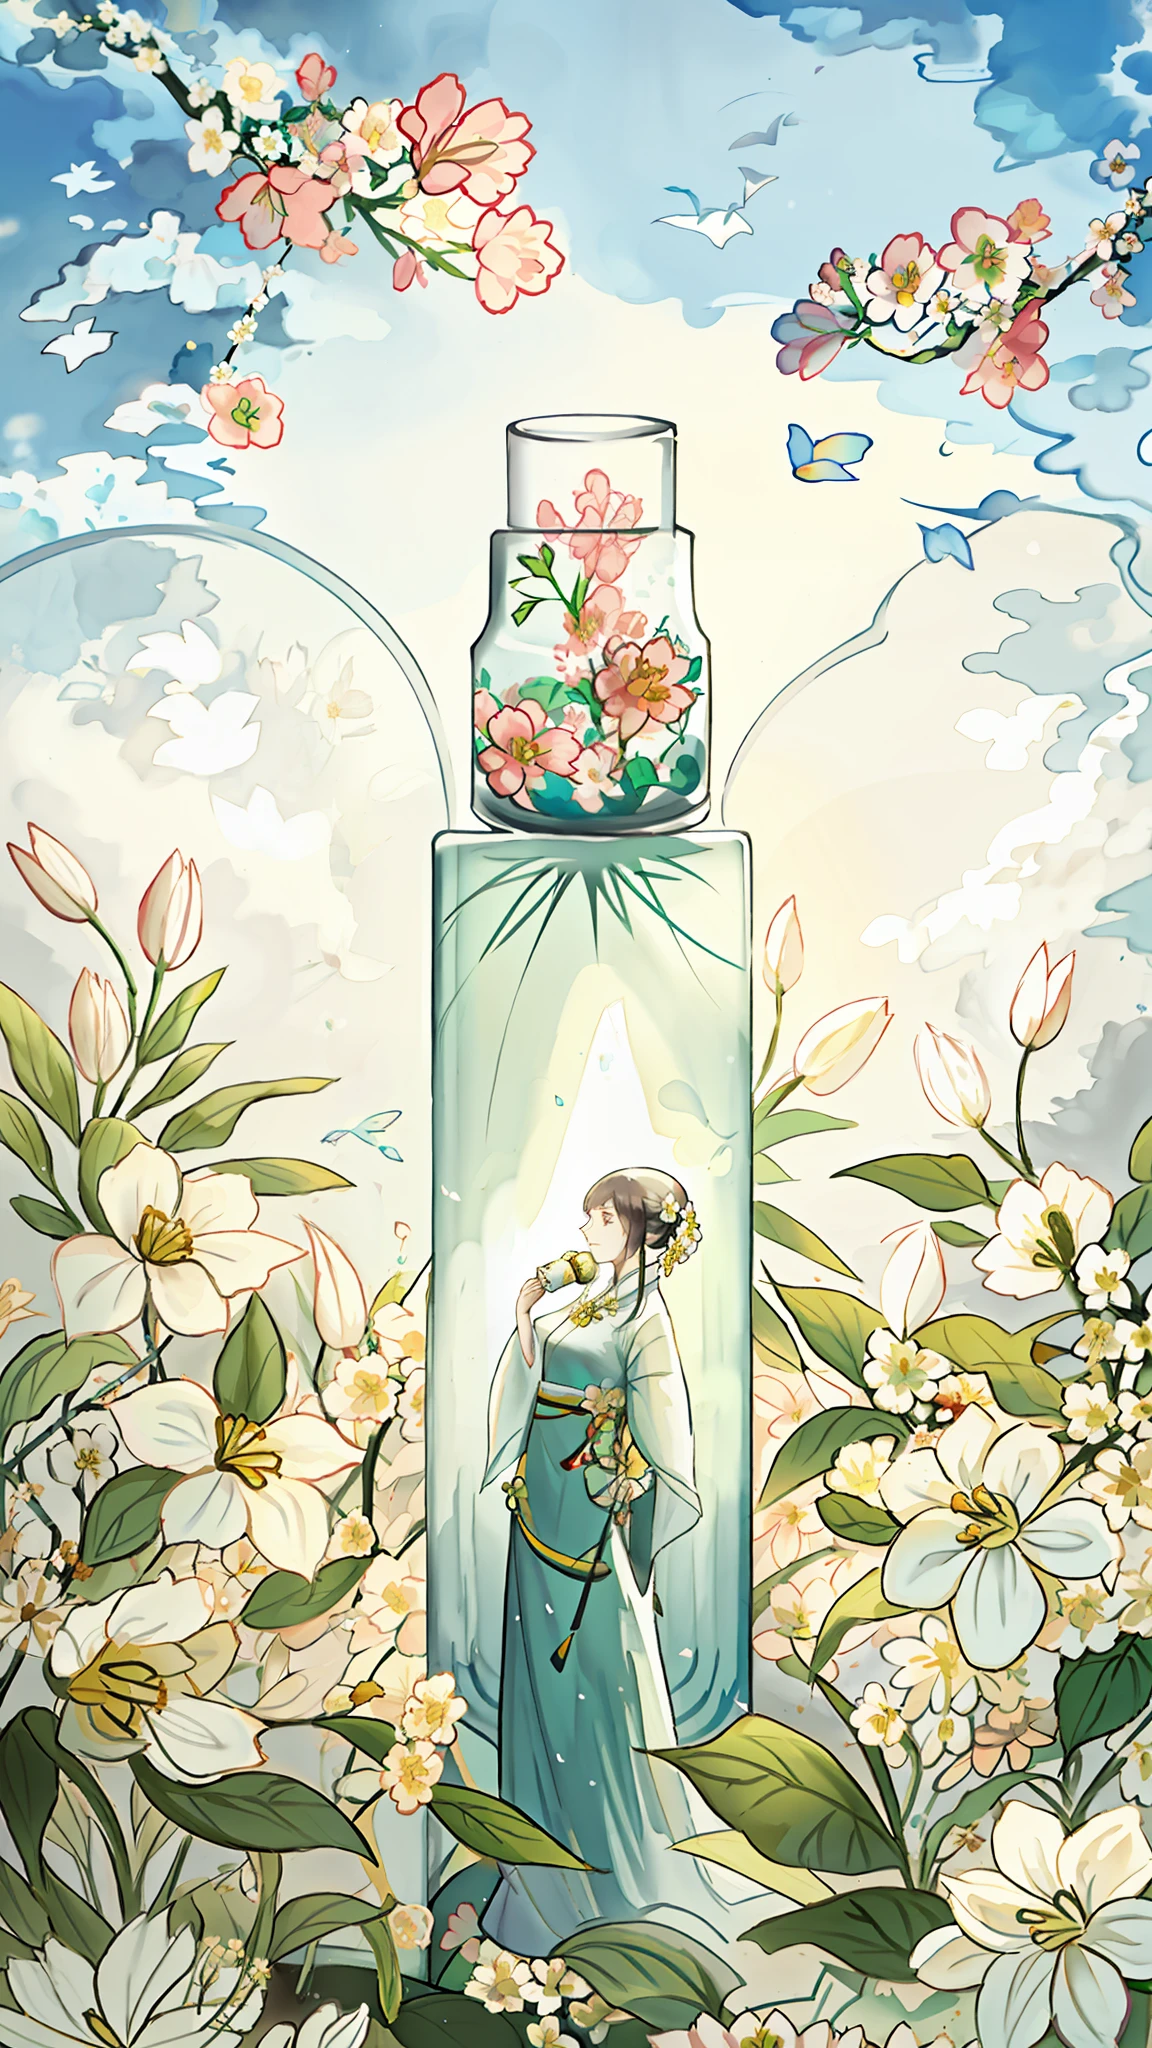 زجاجة مستديرة بيضاء, surrounded by زهور, امرأة شابة تقف بجانب الزجاجة, وجه رقيق, زهور, لون, حيوية, جمال, مقابلة, طبيعة, قوة الحياة, ضوء الشمس. جو جميل, التكامل المتناغم والمريح